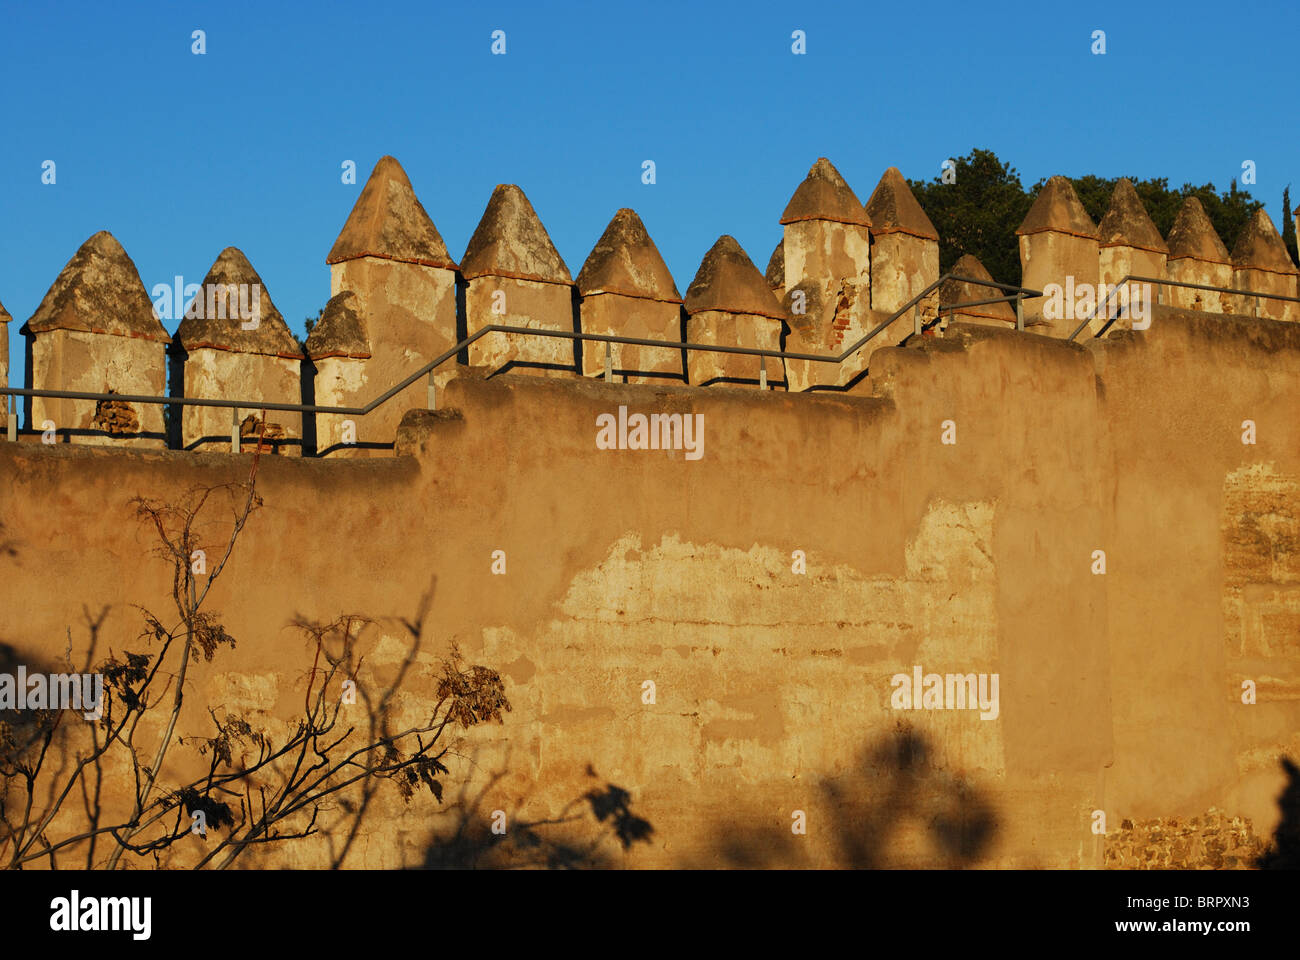 Castello merlature, castello di Gibralfaro, Malaga, Costa del Sol, provincia di Malaga, Andalusia, Spagna, Europa occidentale. Foto Stock